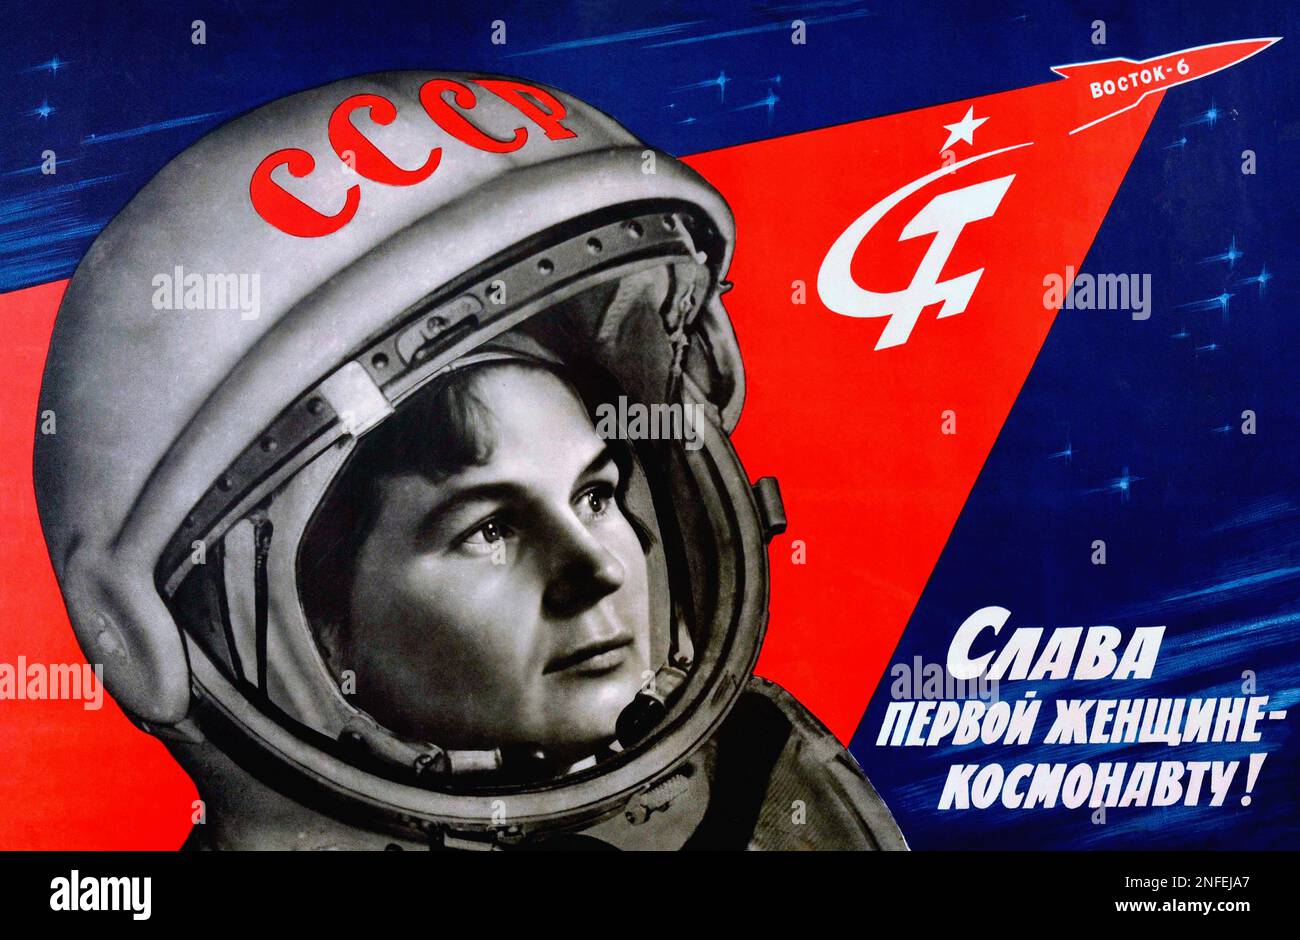 Cartel espacial soviético vintage - gloria a la primera mujer cosmonauta Valentina Tereshkova, cosmonauta soviético de 1963. la primera y más joven mujer en el espacio. Foto de stock